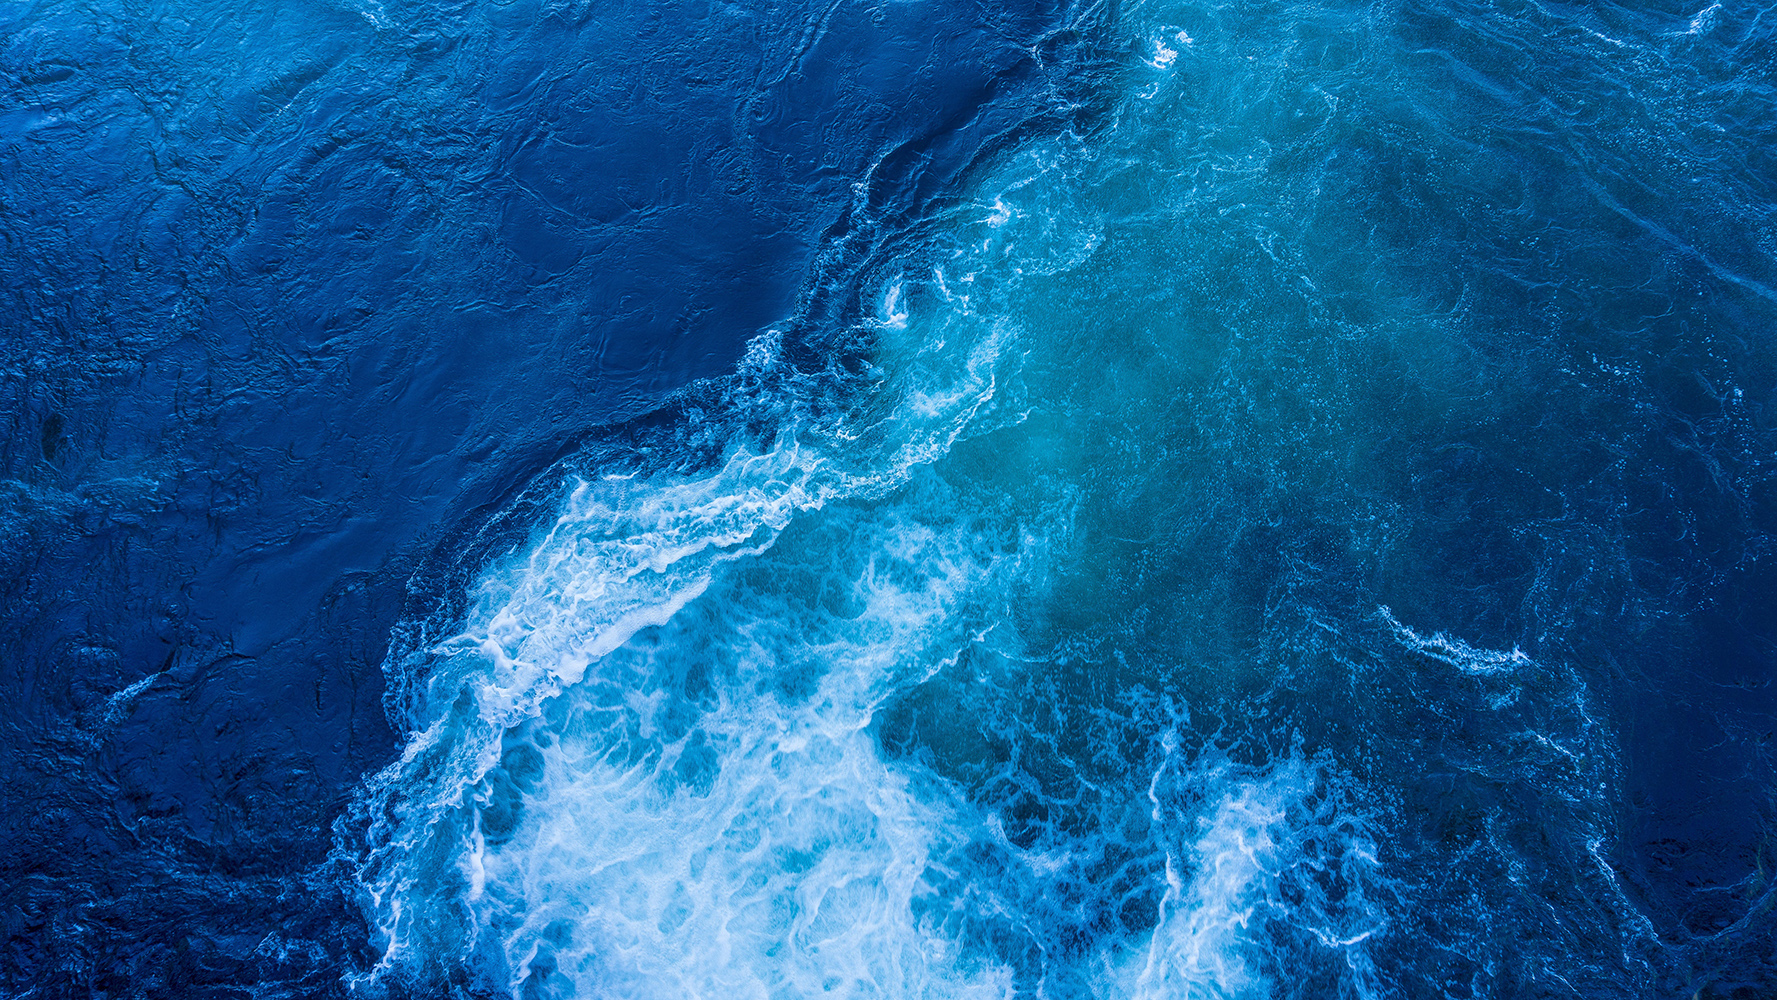 Blue ocean tide with foam